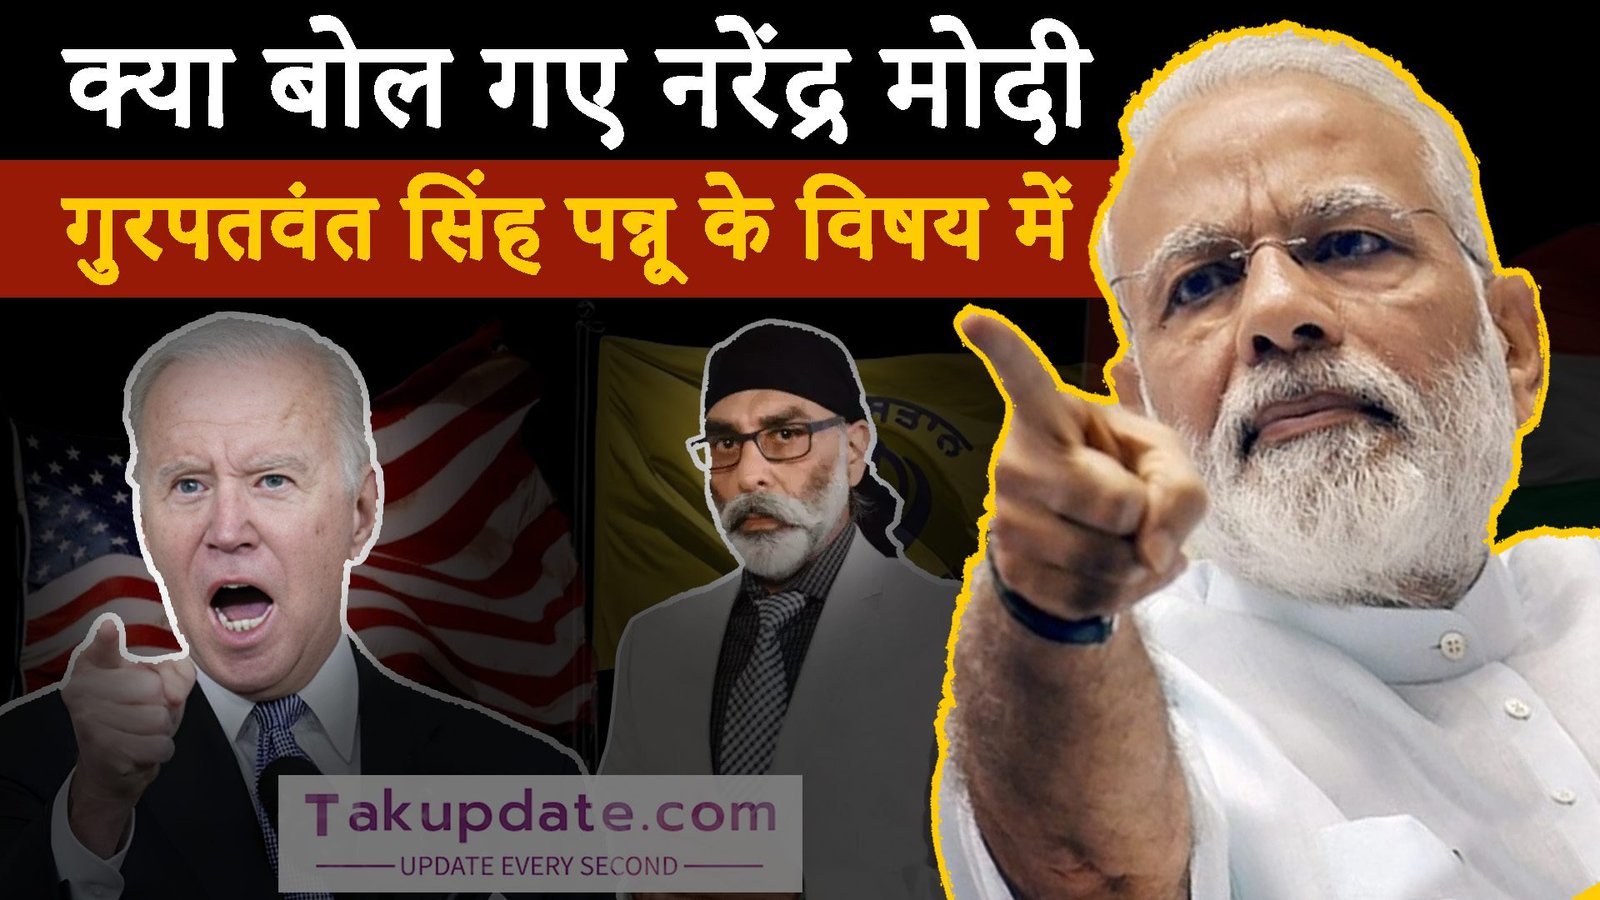 Gurpatwant Singh Pannu: जानिए क्या कहा प्रधानमंत्री नरेंद्र मोदी ने गुरपतवंत सिंह पन्नू के विषय में 2023